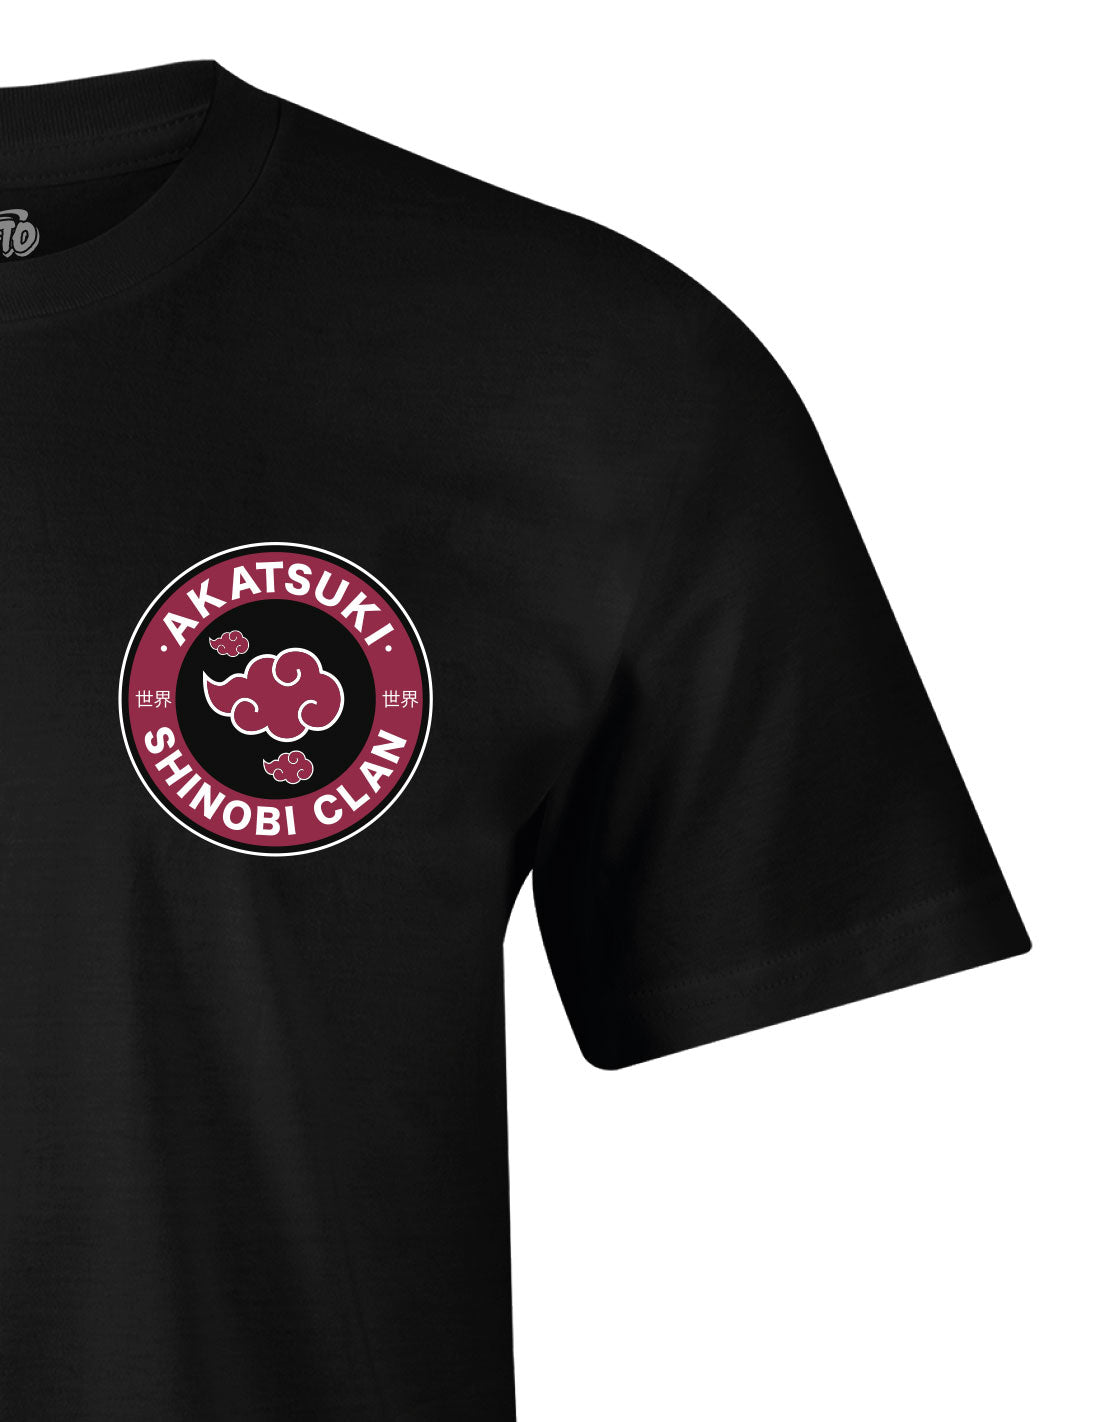 Naruto t-shirt - Akatsuki Shinobi Clan